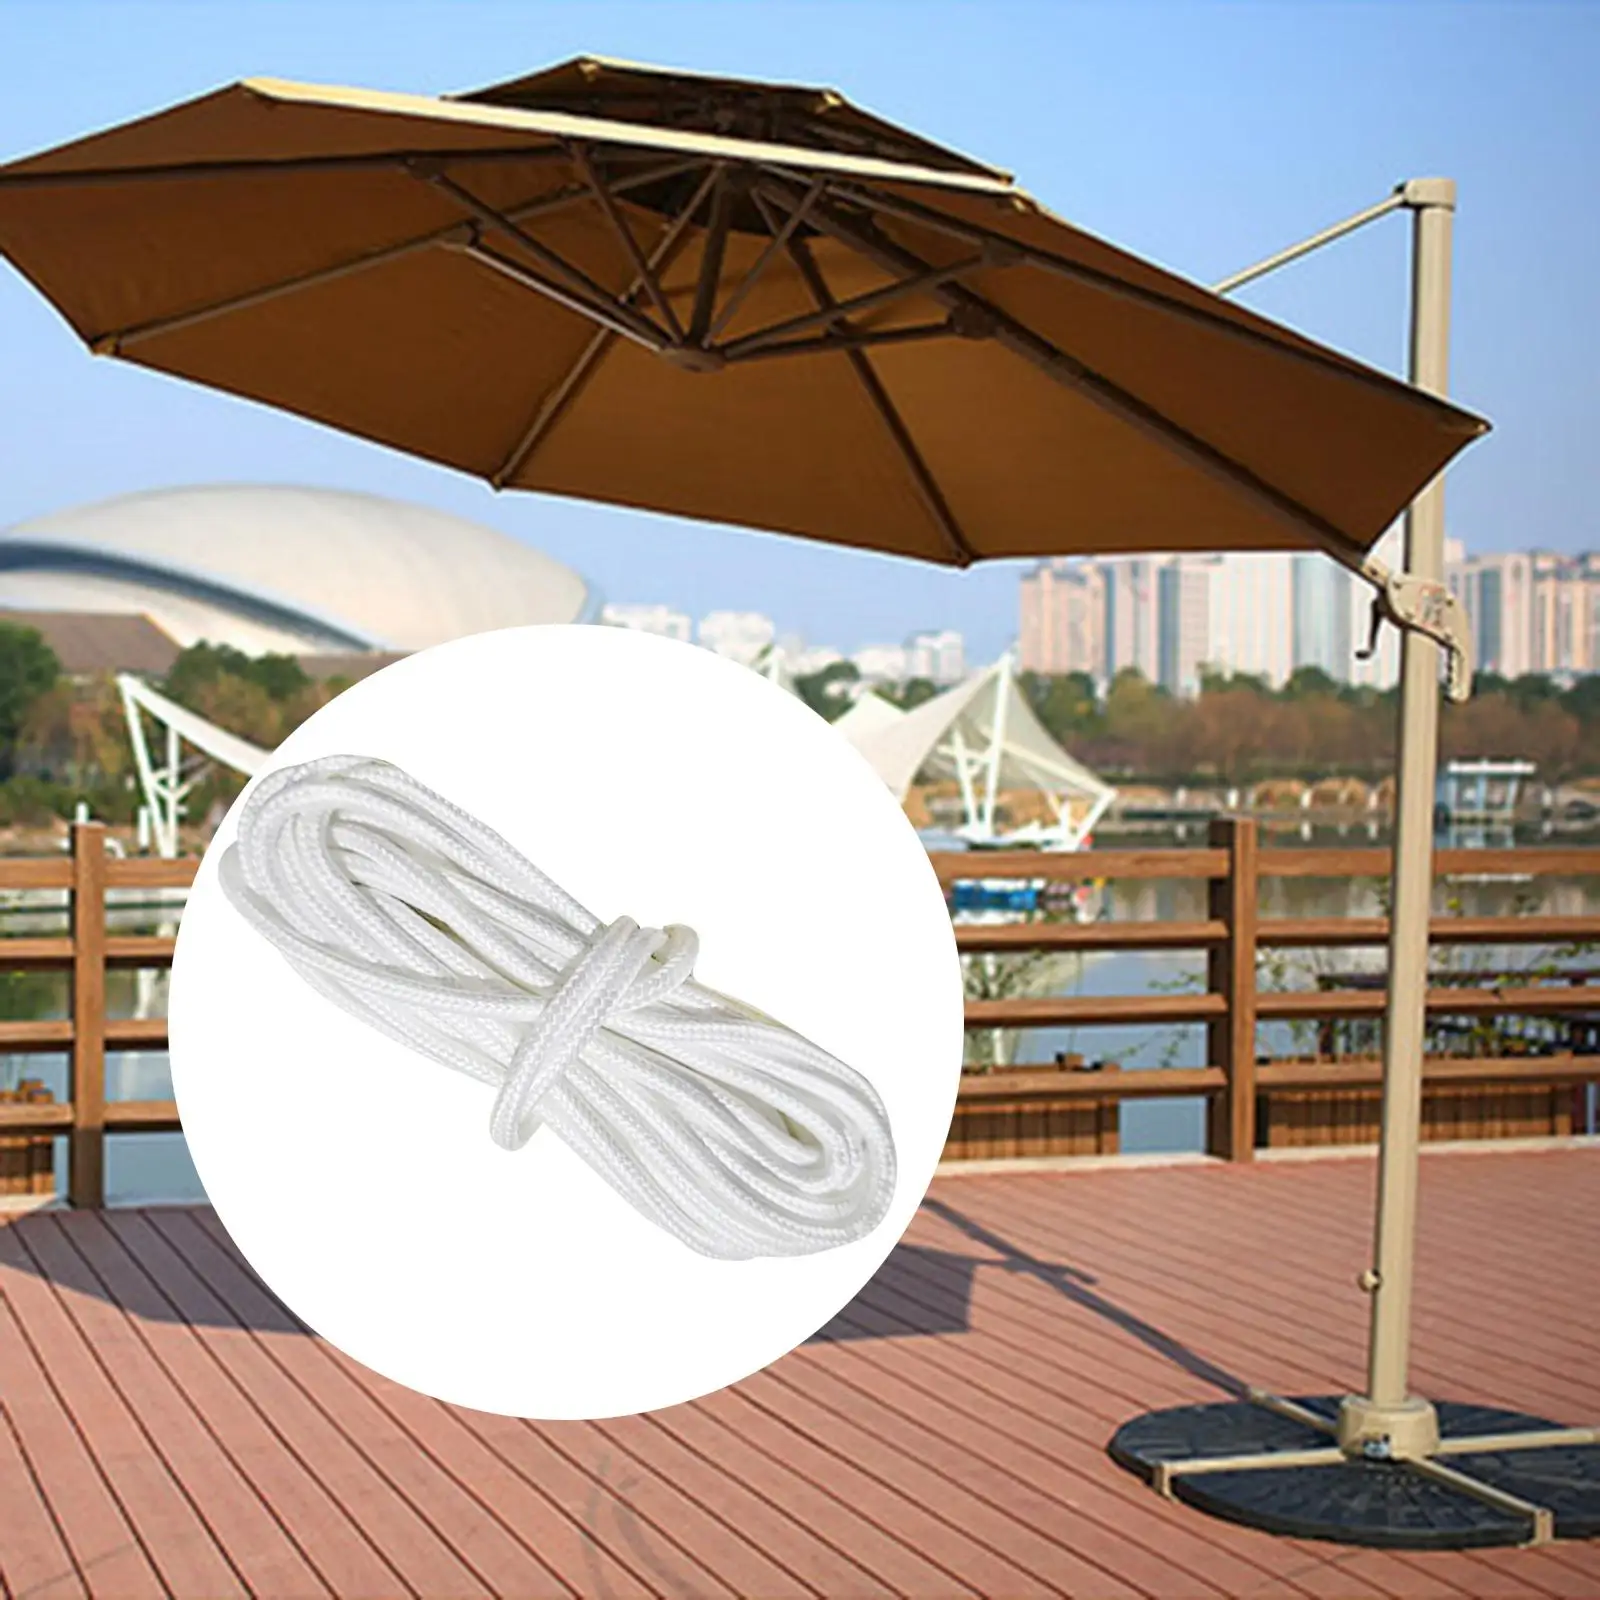 Patio Umbrella Cord Replacement Portable Patio Umbrella Accessories Patio Umbrella Cord Line for Patio Table Picnic Deck Beach